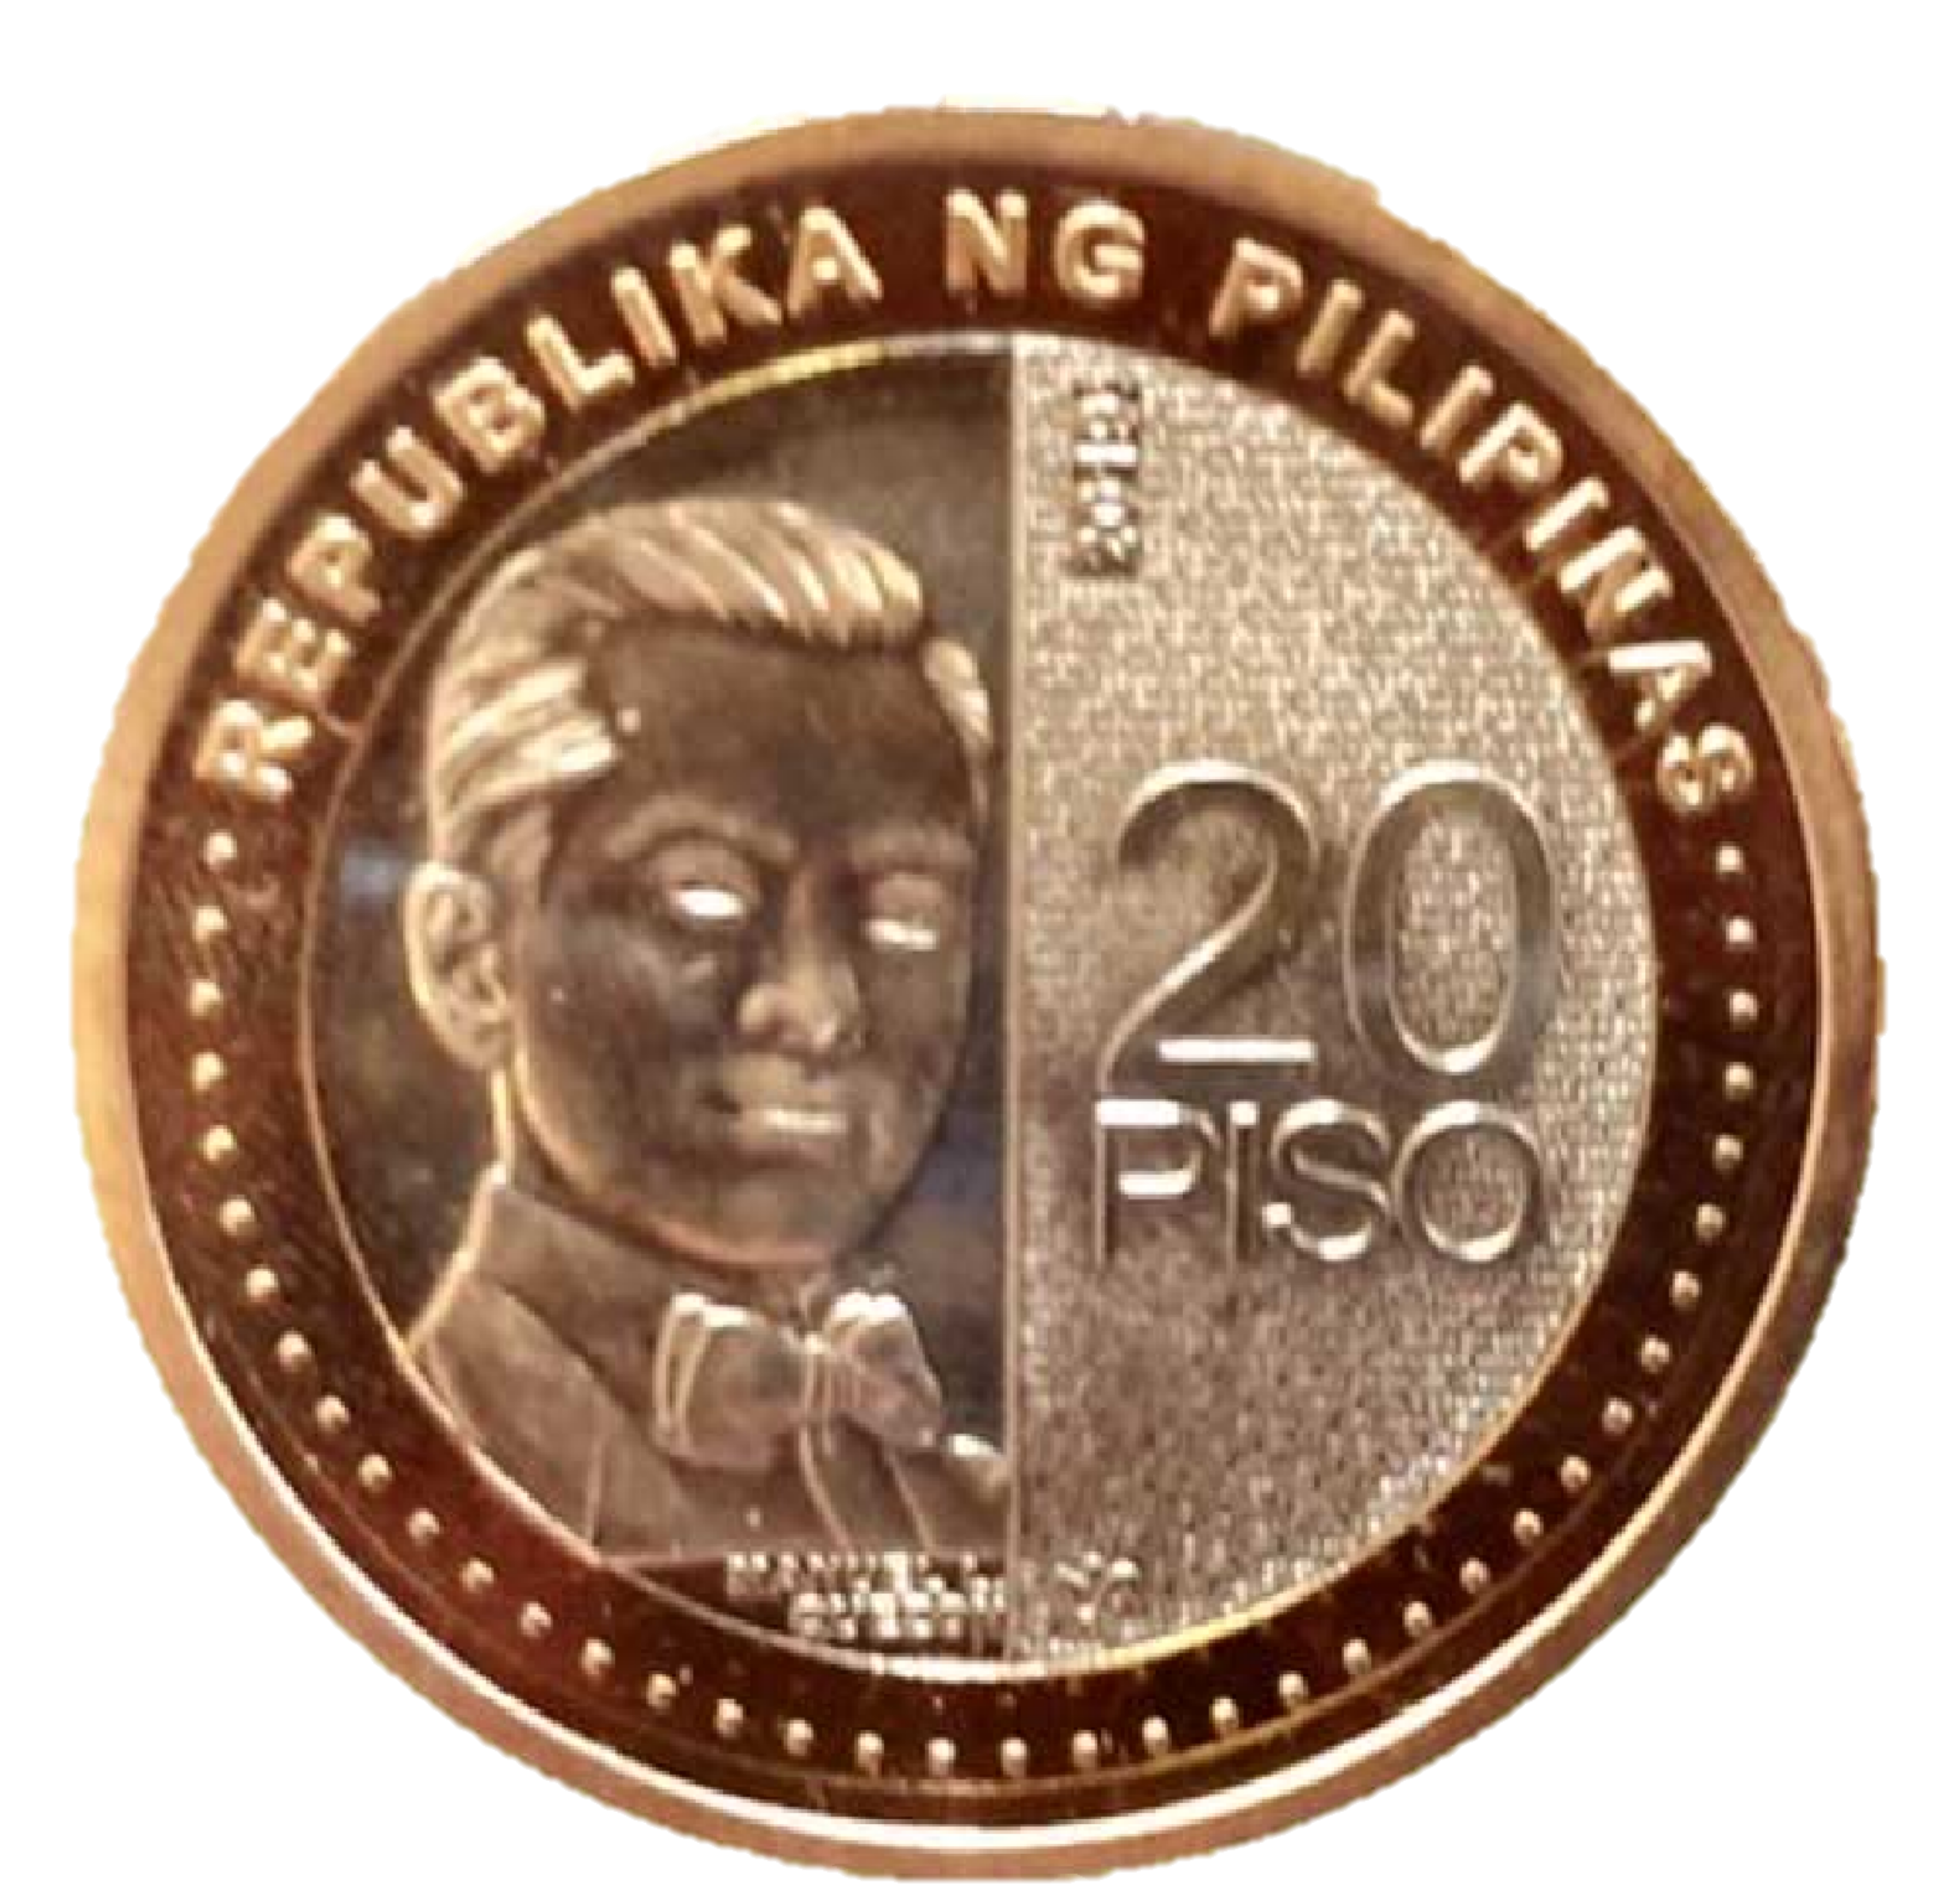 20 Peso Coin